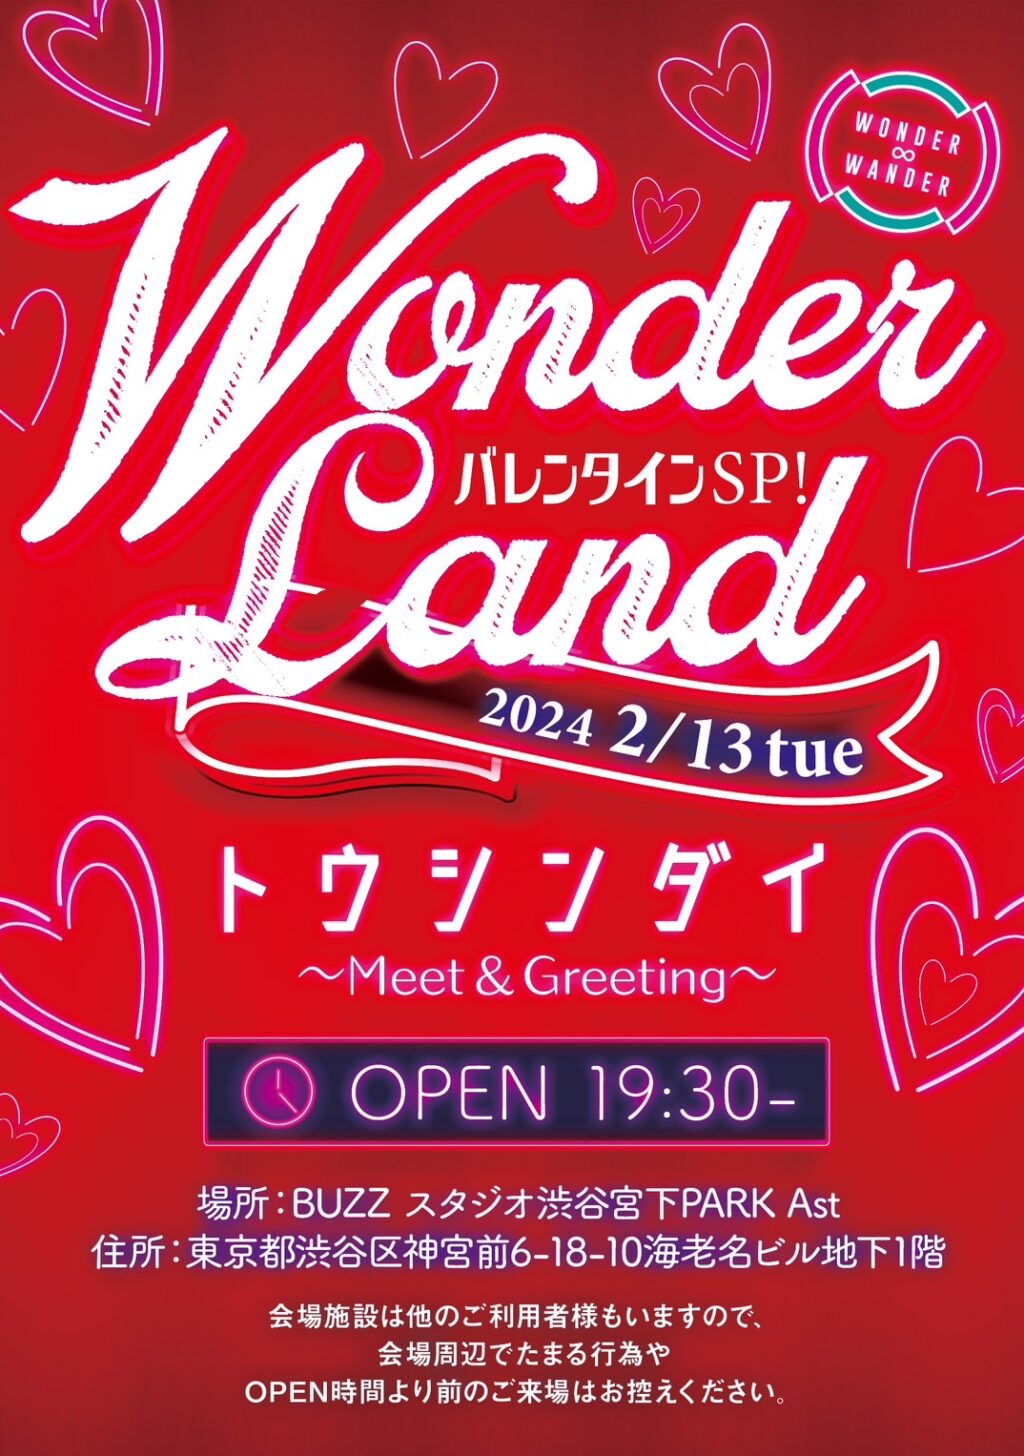 2024.2.13(火) WONDER LANDバレンタインSP Meet &Greeting